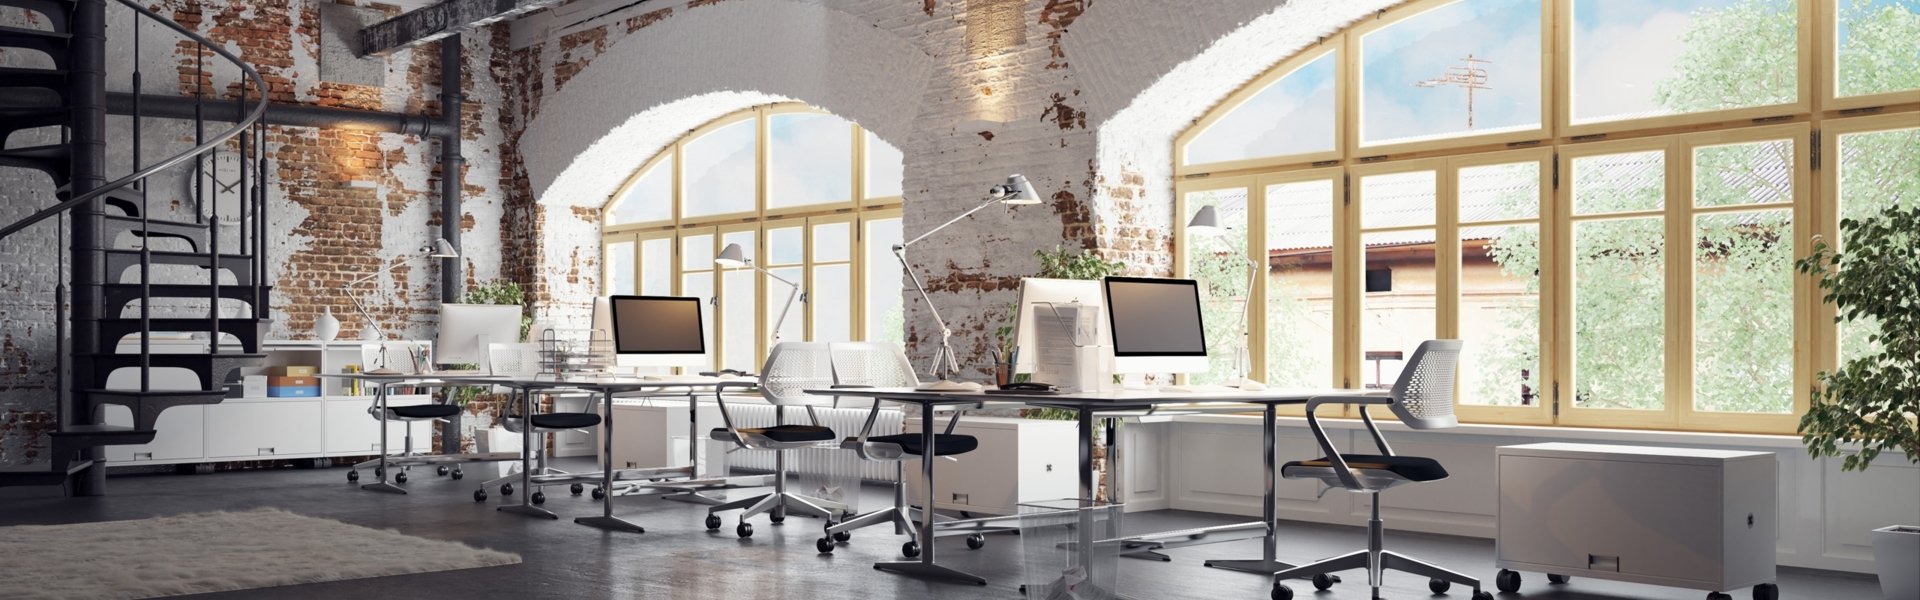 Moderne Büroräume in einem rustikalen Altbau